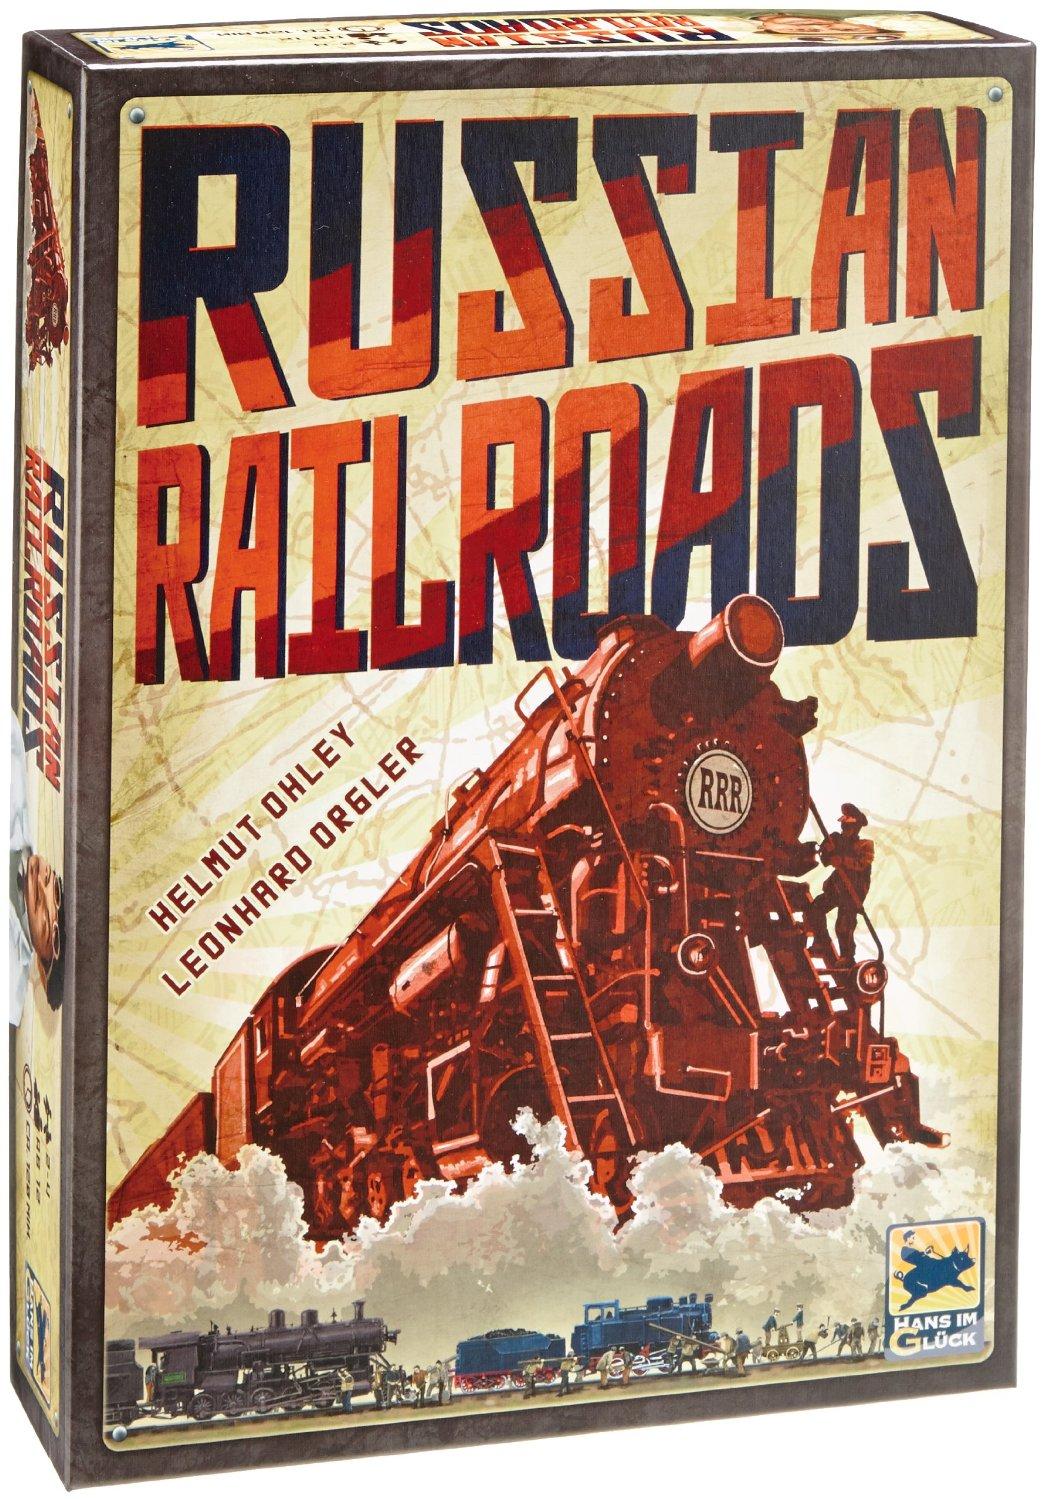 Russian Railroads – das spannende Spiel für Taktiker 0 (0)